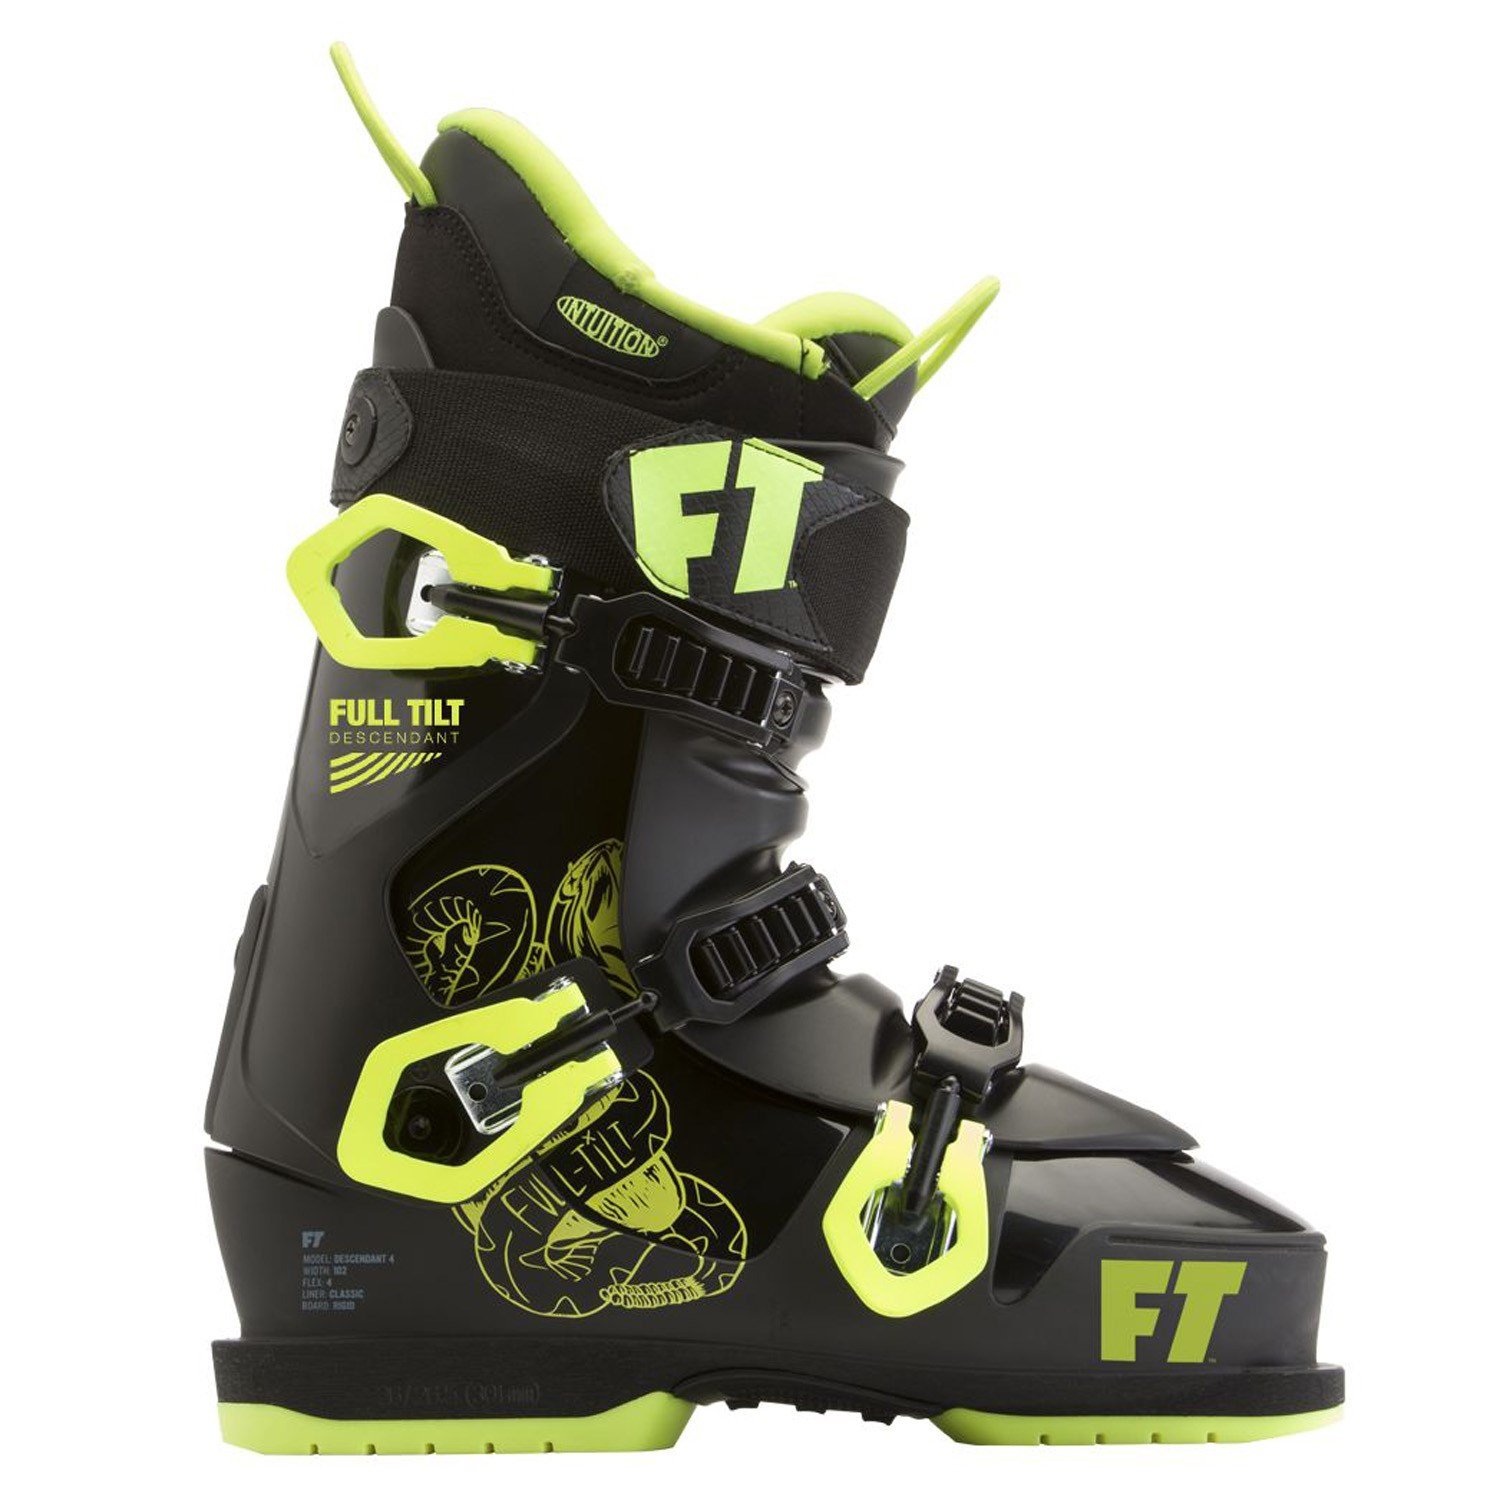 used full tilt ski boots